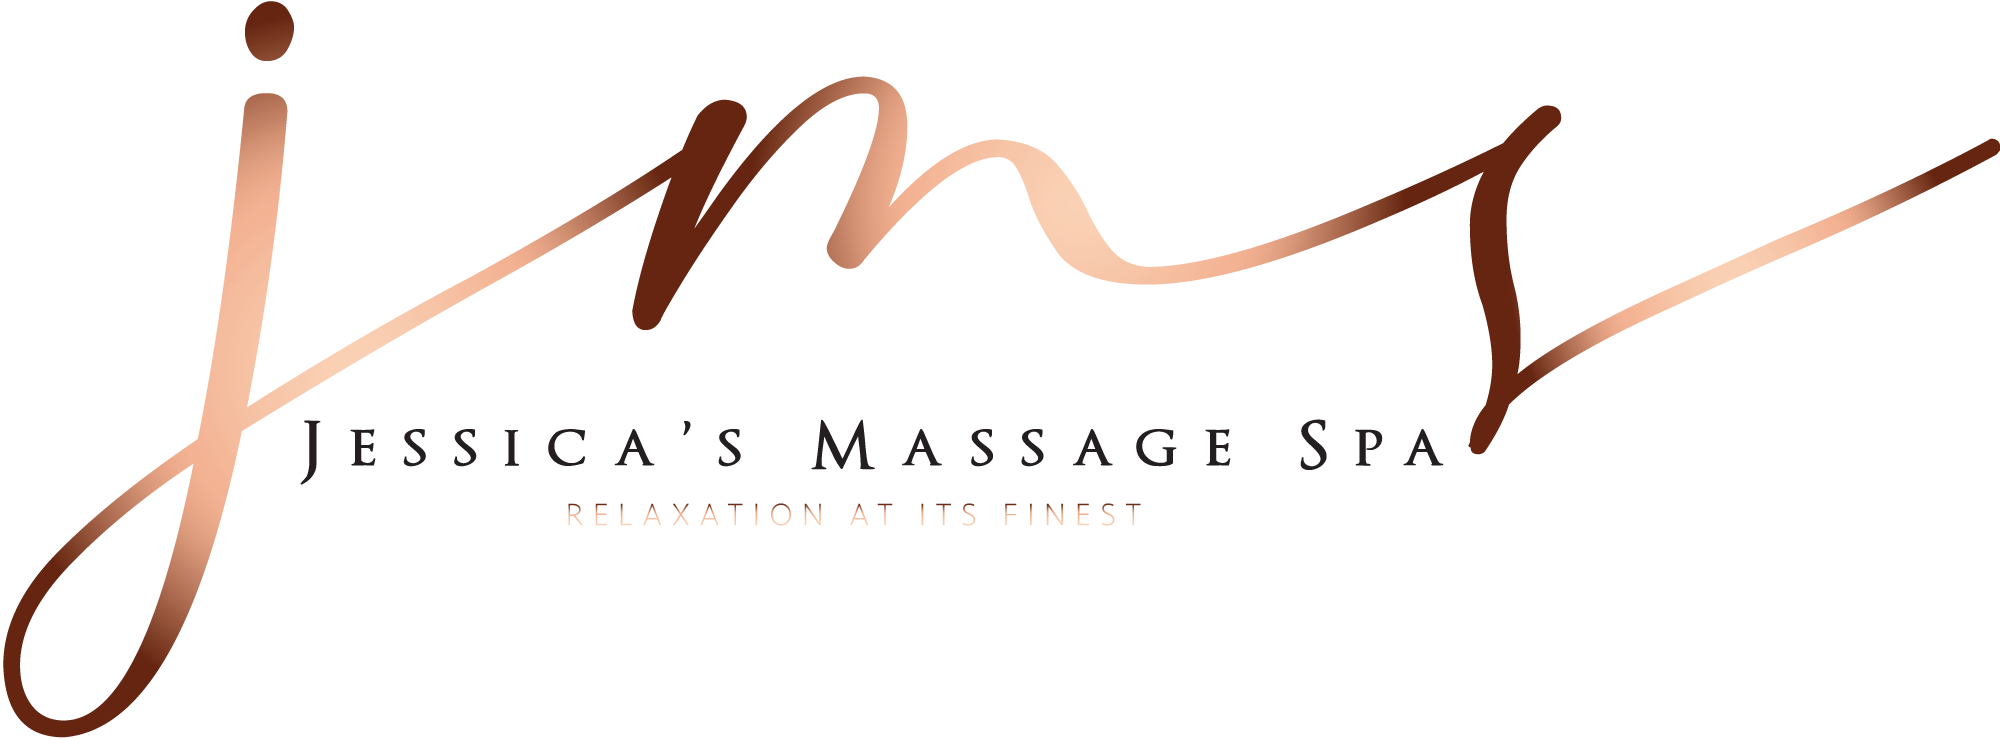 Jessica's Massage Spa